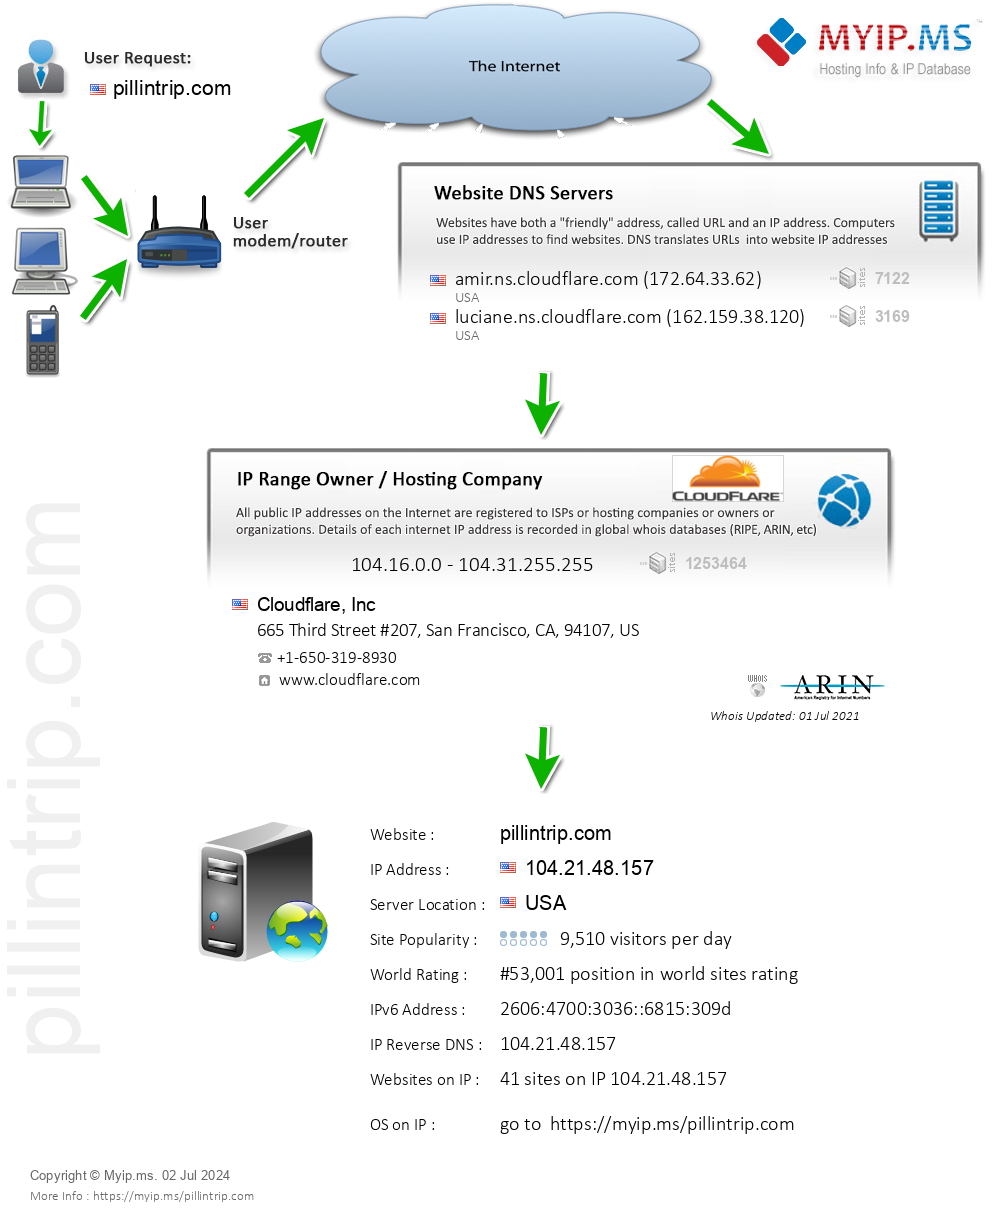 Pillintrip.com - Website Hosting Visual IP Diagram